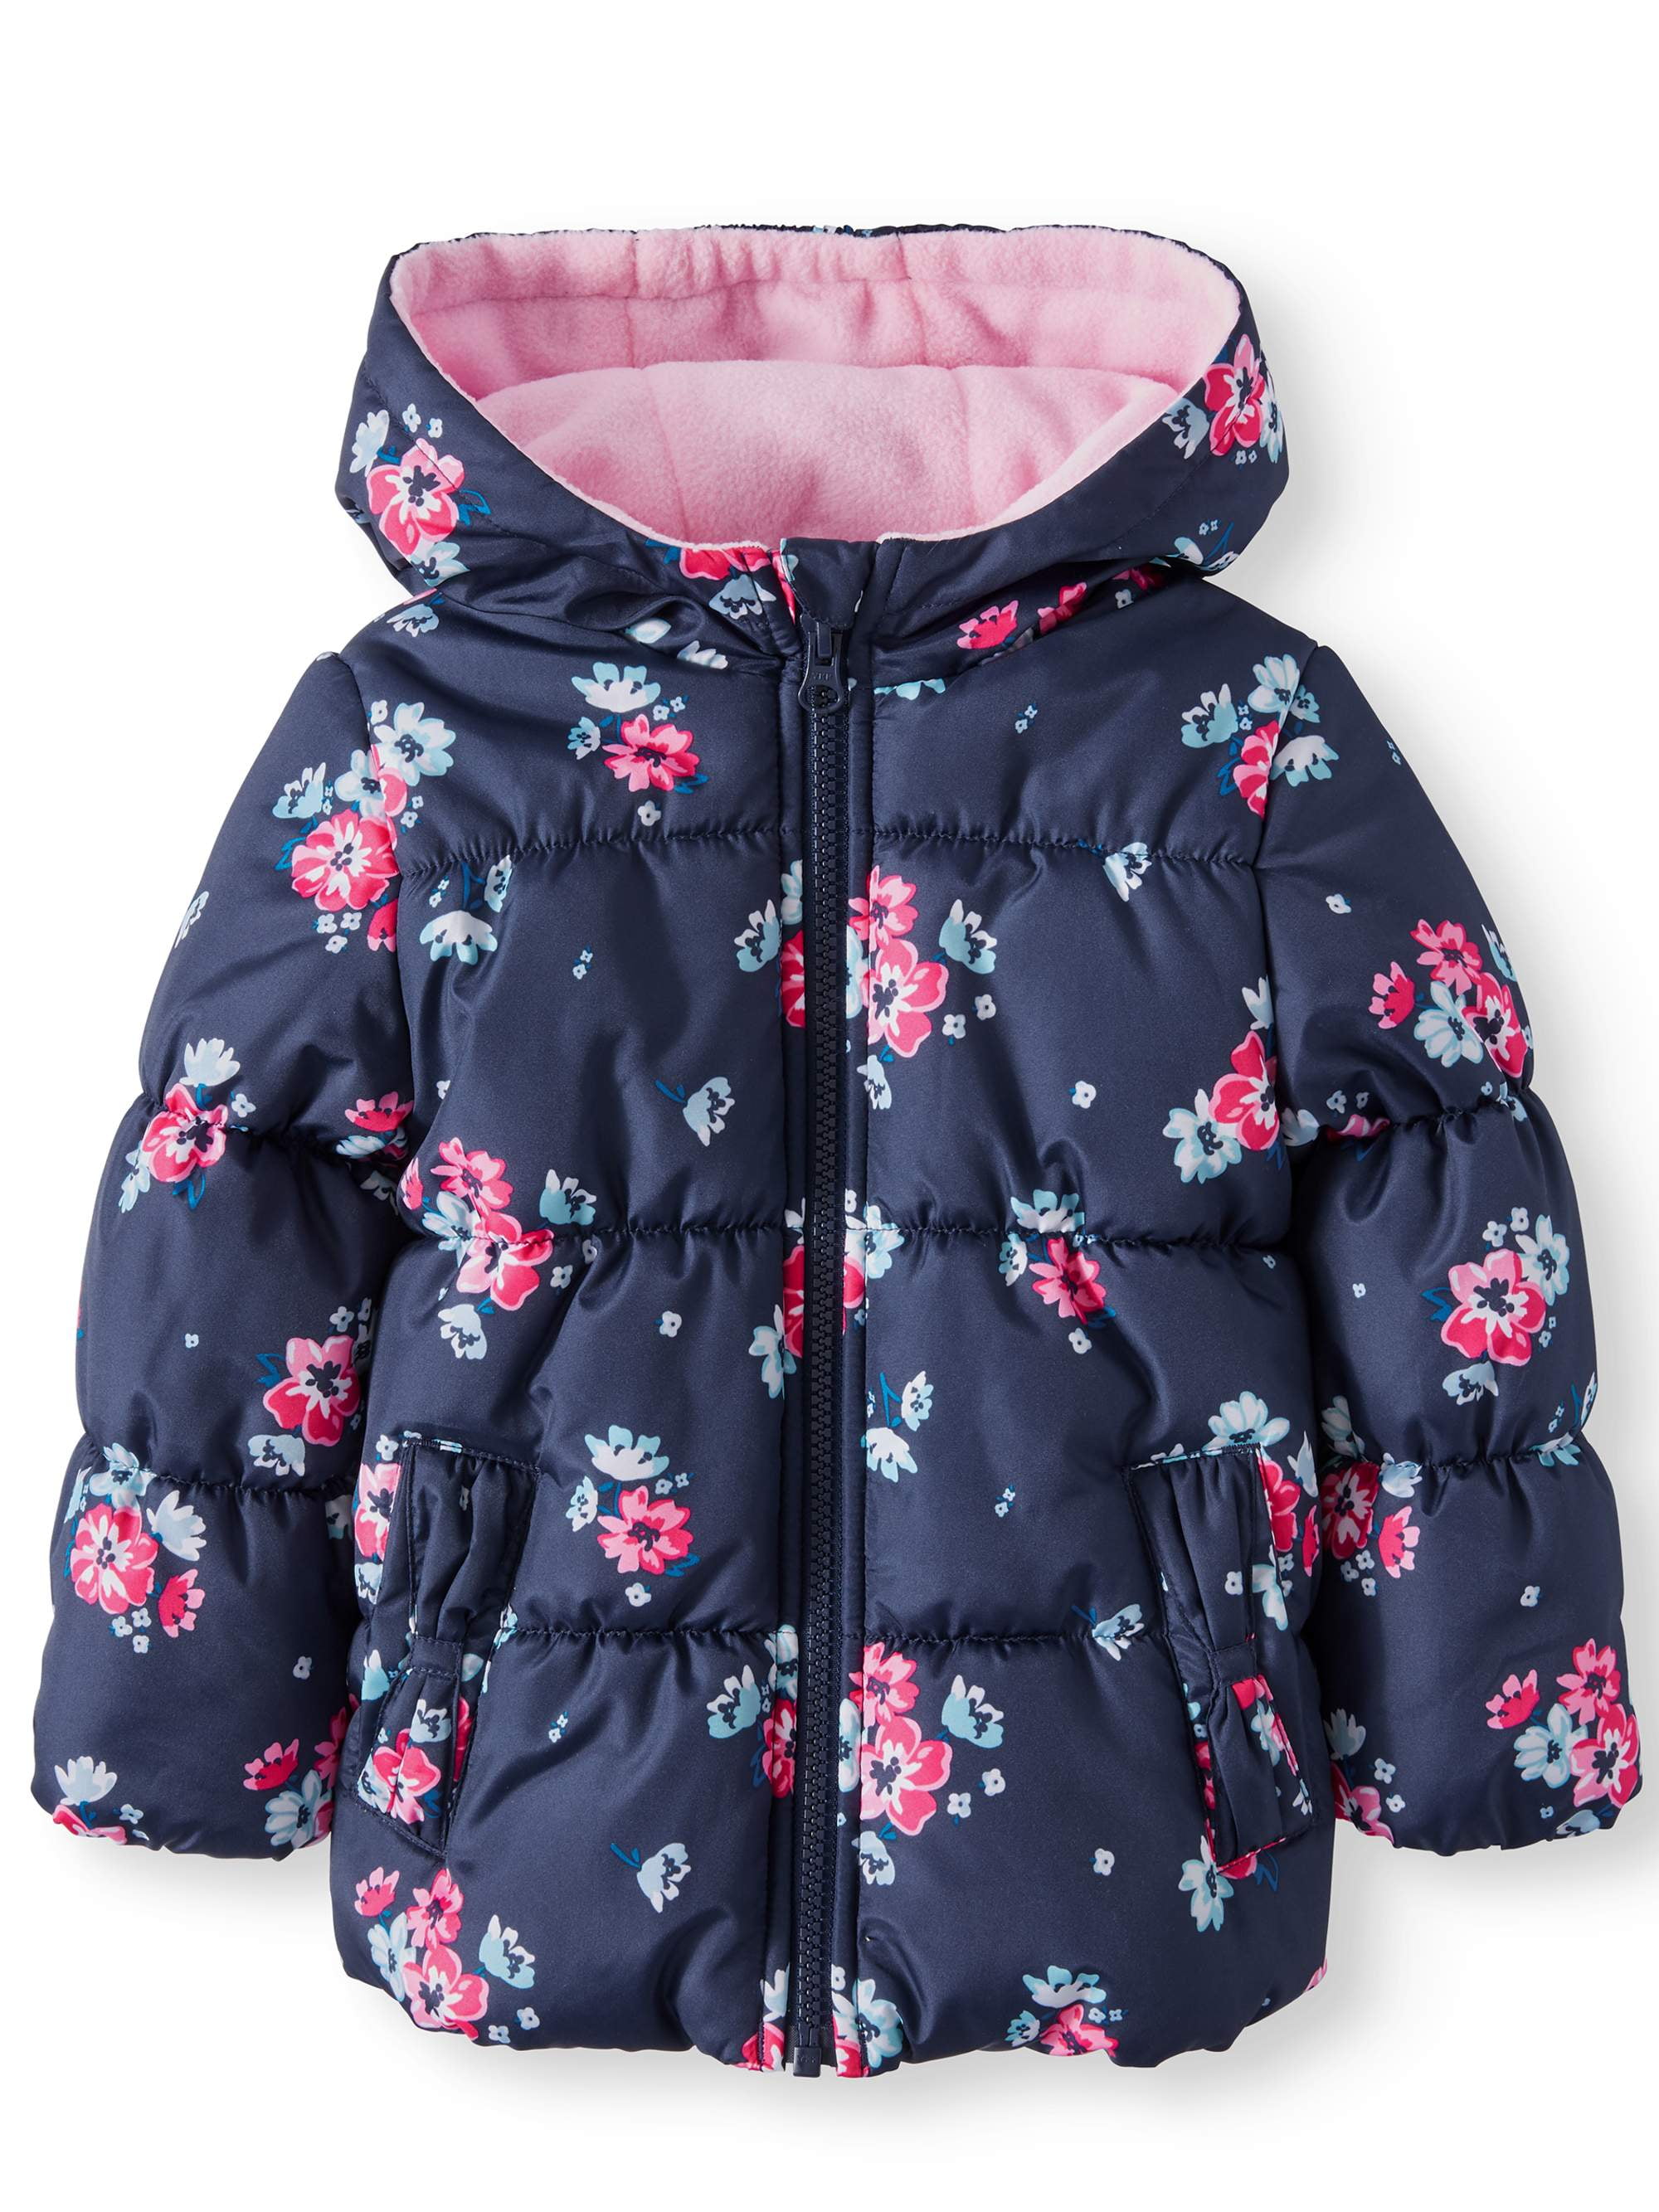 Size 12M 18M 24M Assorted Colors Carter's Infant Girls Bubble Jacket 